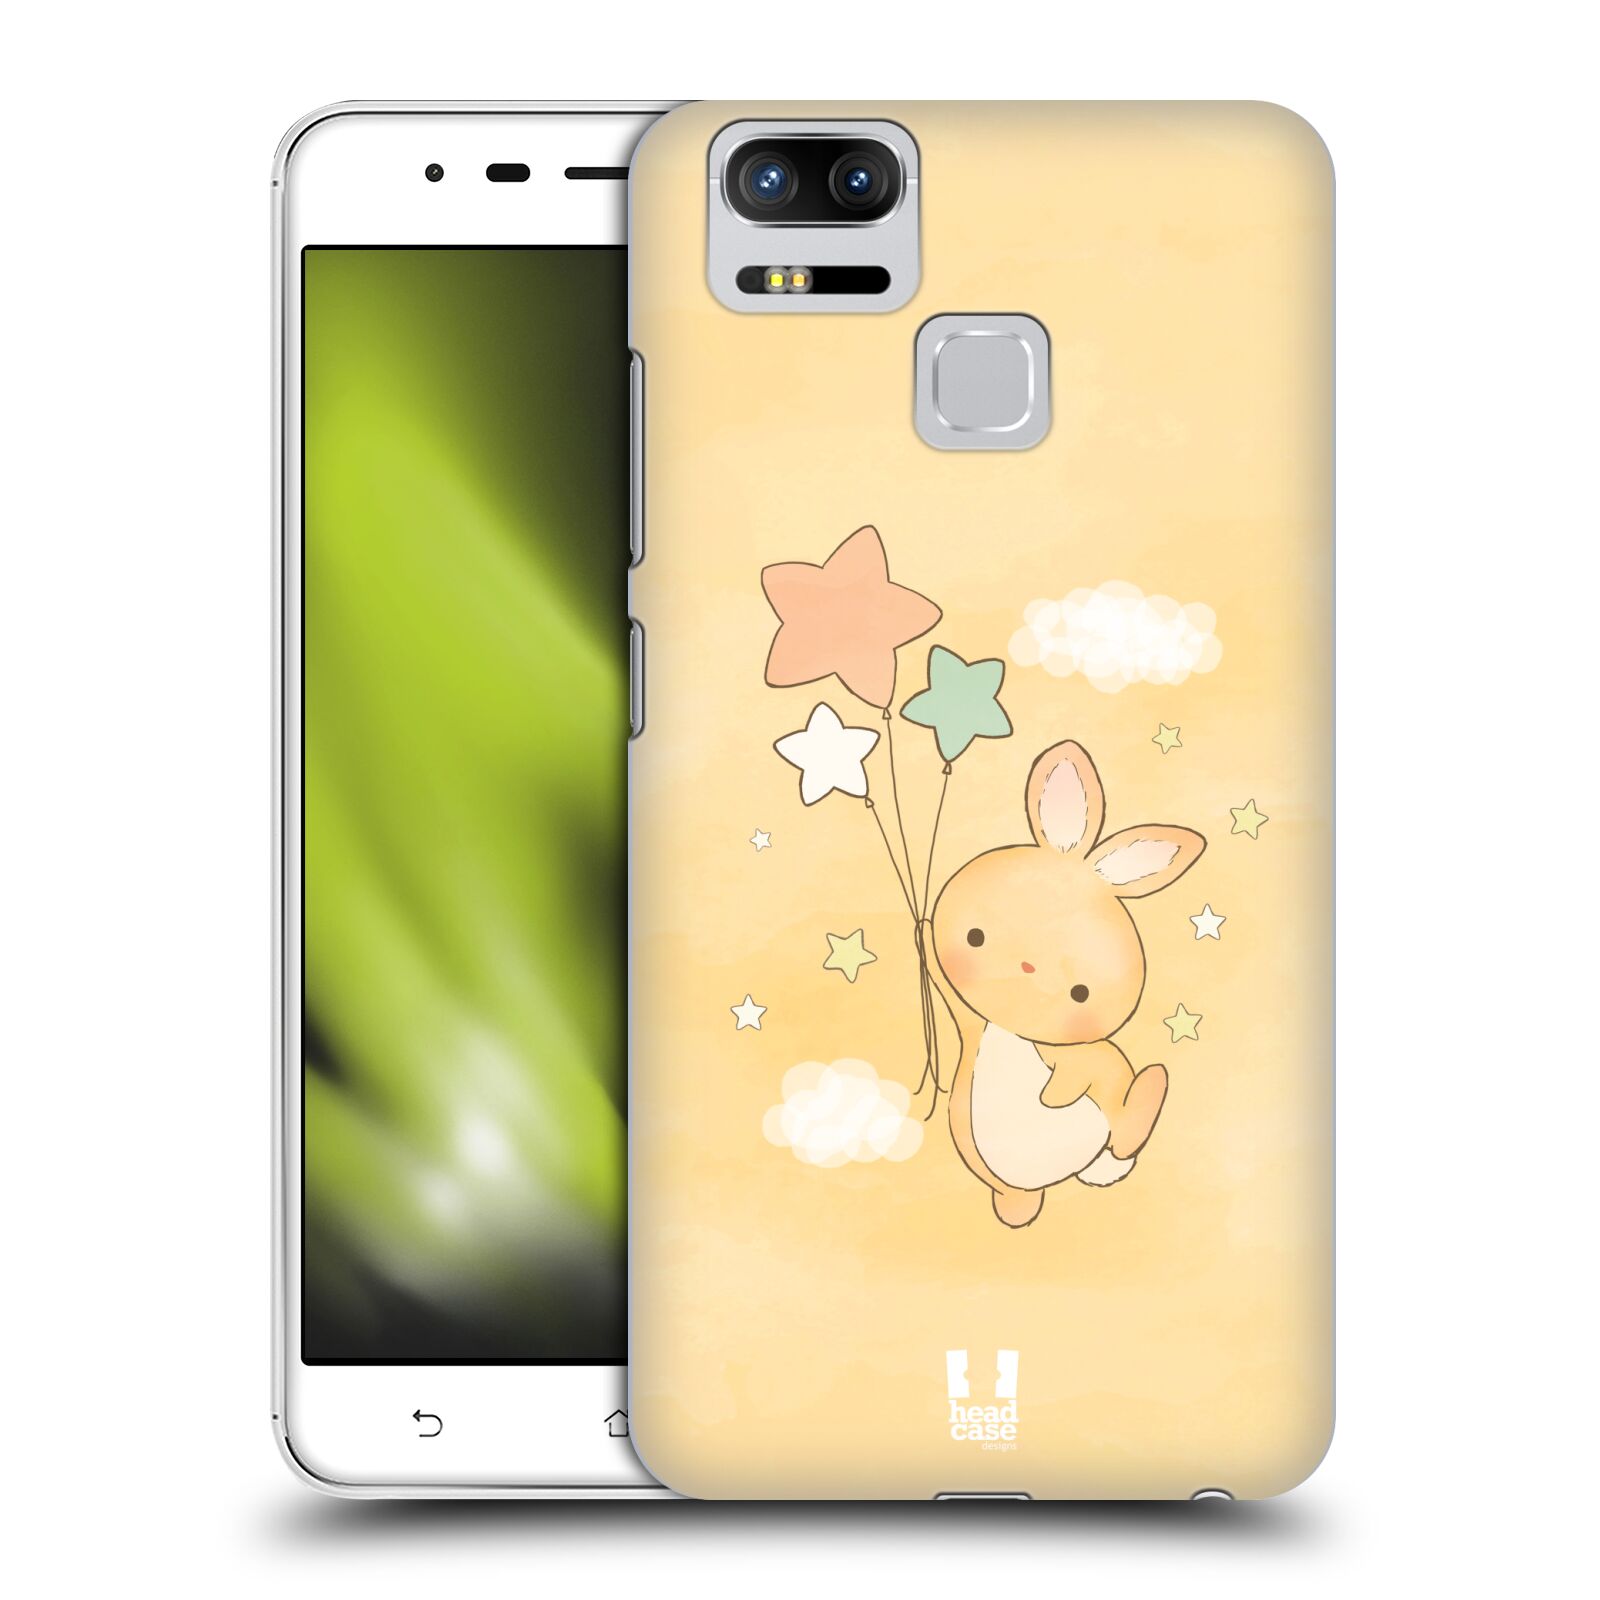 HEAD CASE plastový obal na mobil Asus Zenfone 3 Zoom ZE553KL vzor králíček a hvězdy žlutá